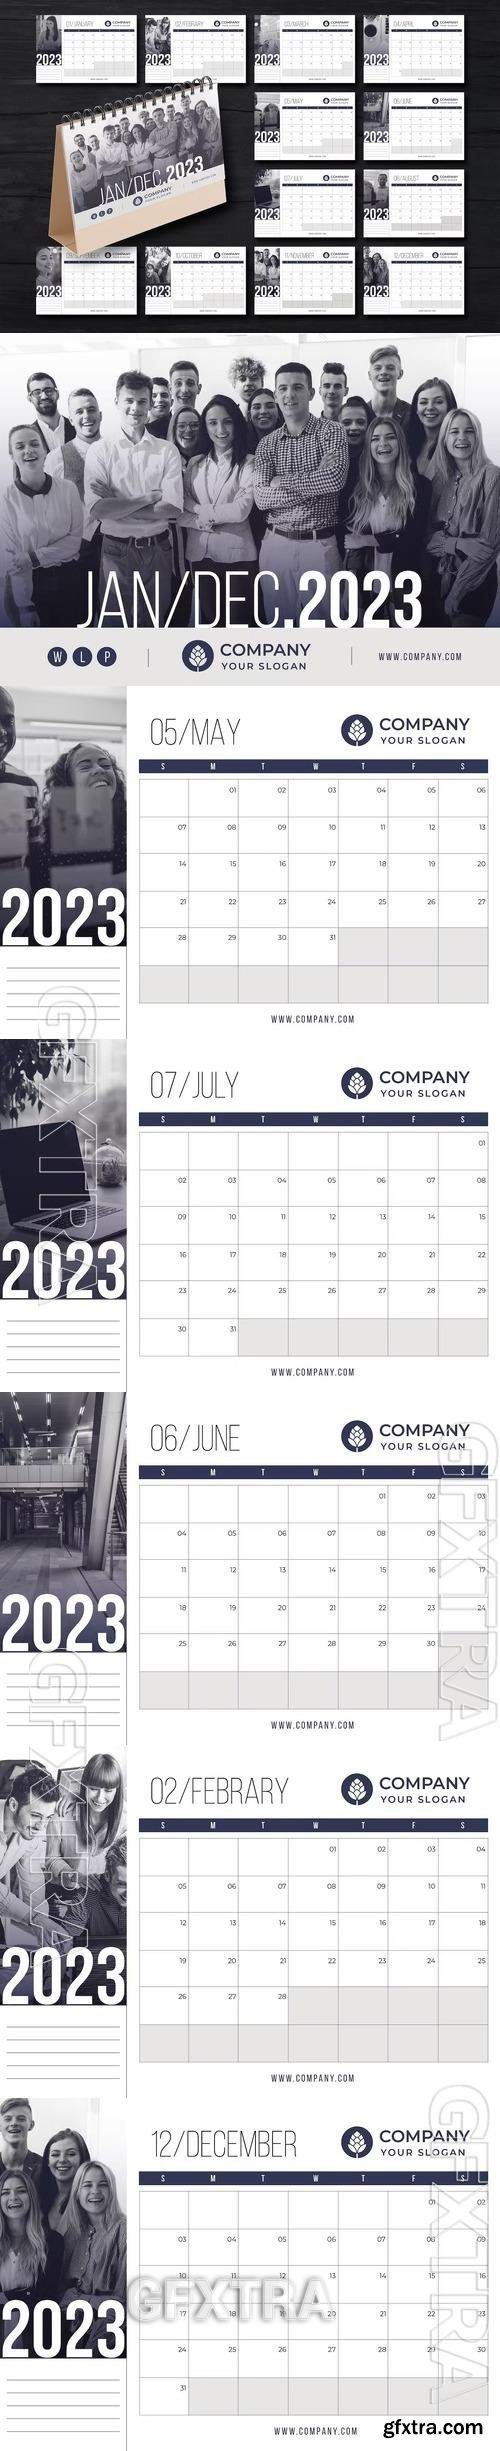 2023 Desk Calendar Layout J3HL62G